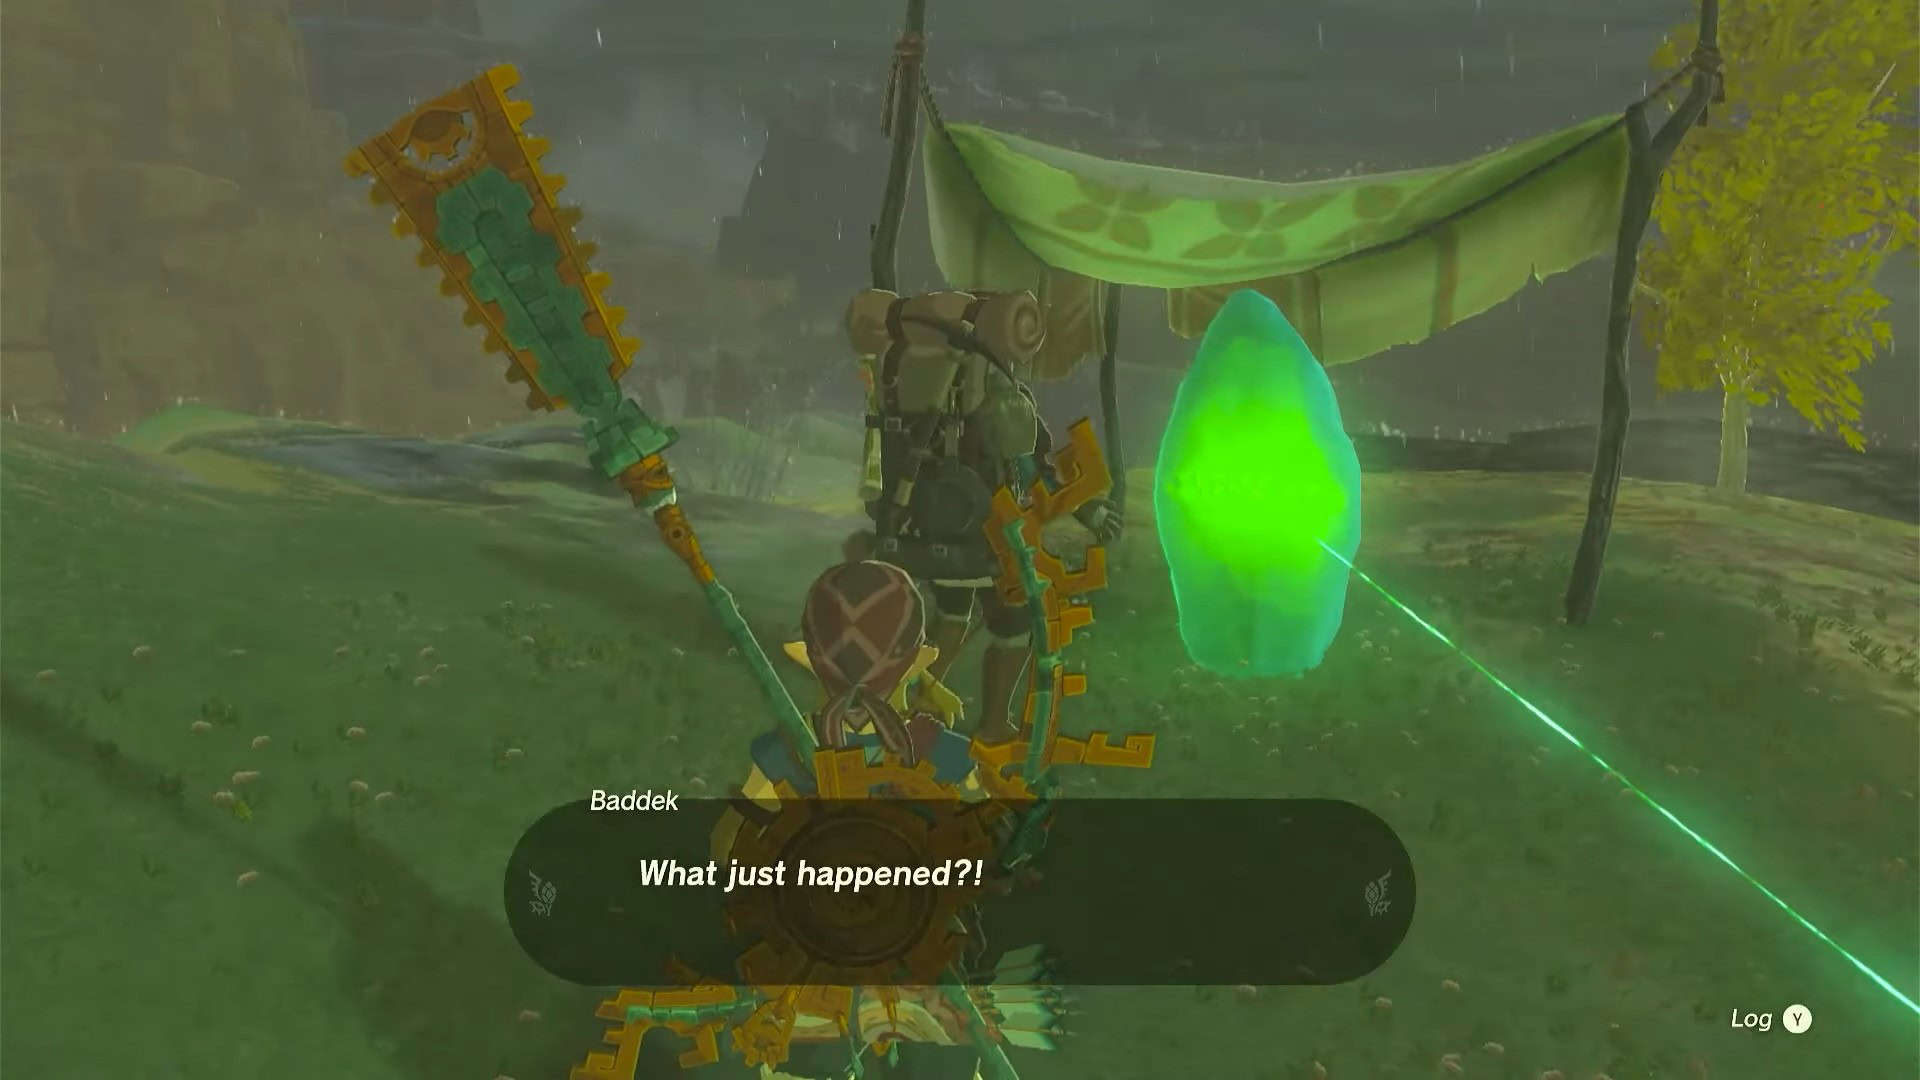 Zelda: devo parlare con Baddek